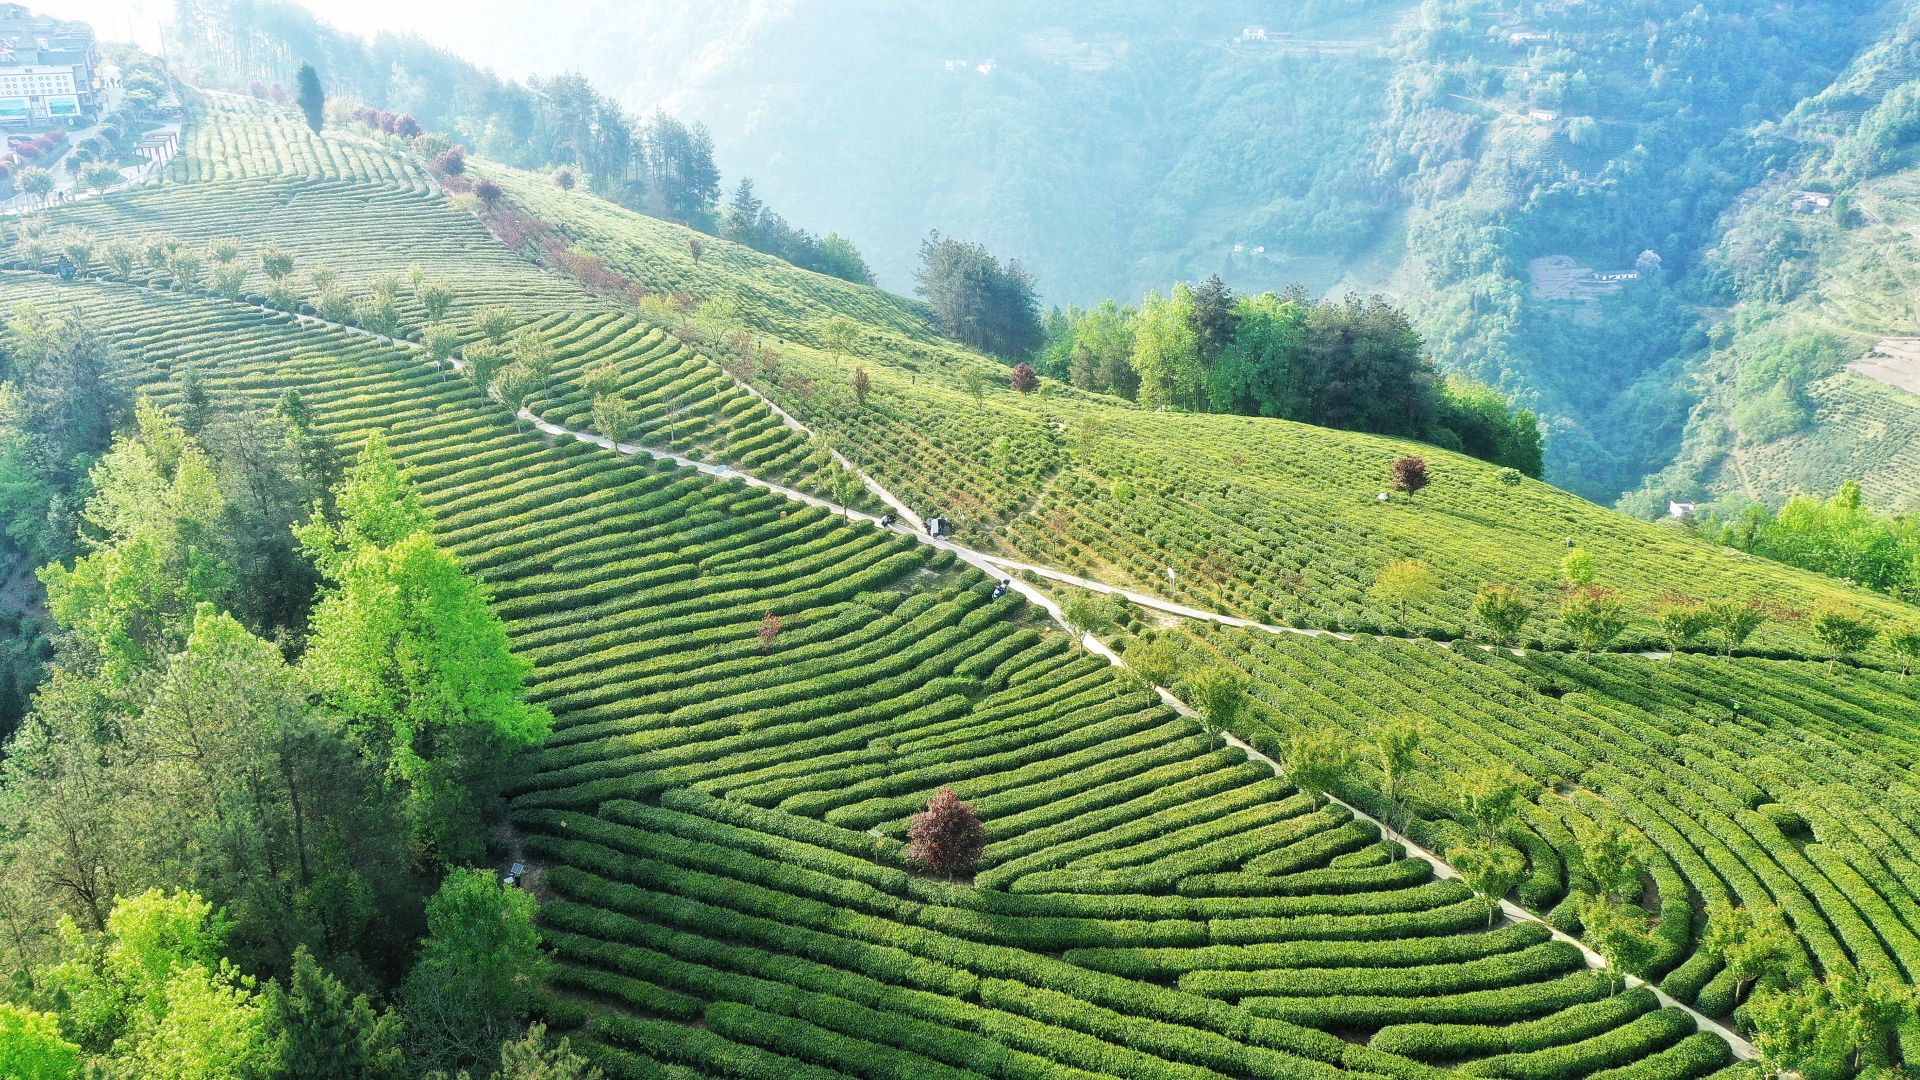 紫阳茶园据了解,紫阳大部分生长在超过25度的陡坡上,茶叶品质好但是